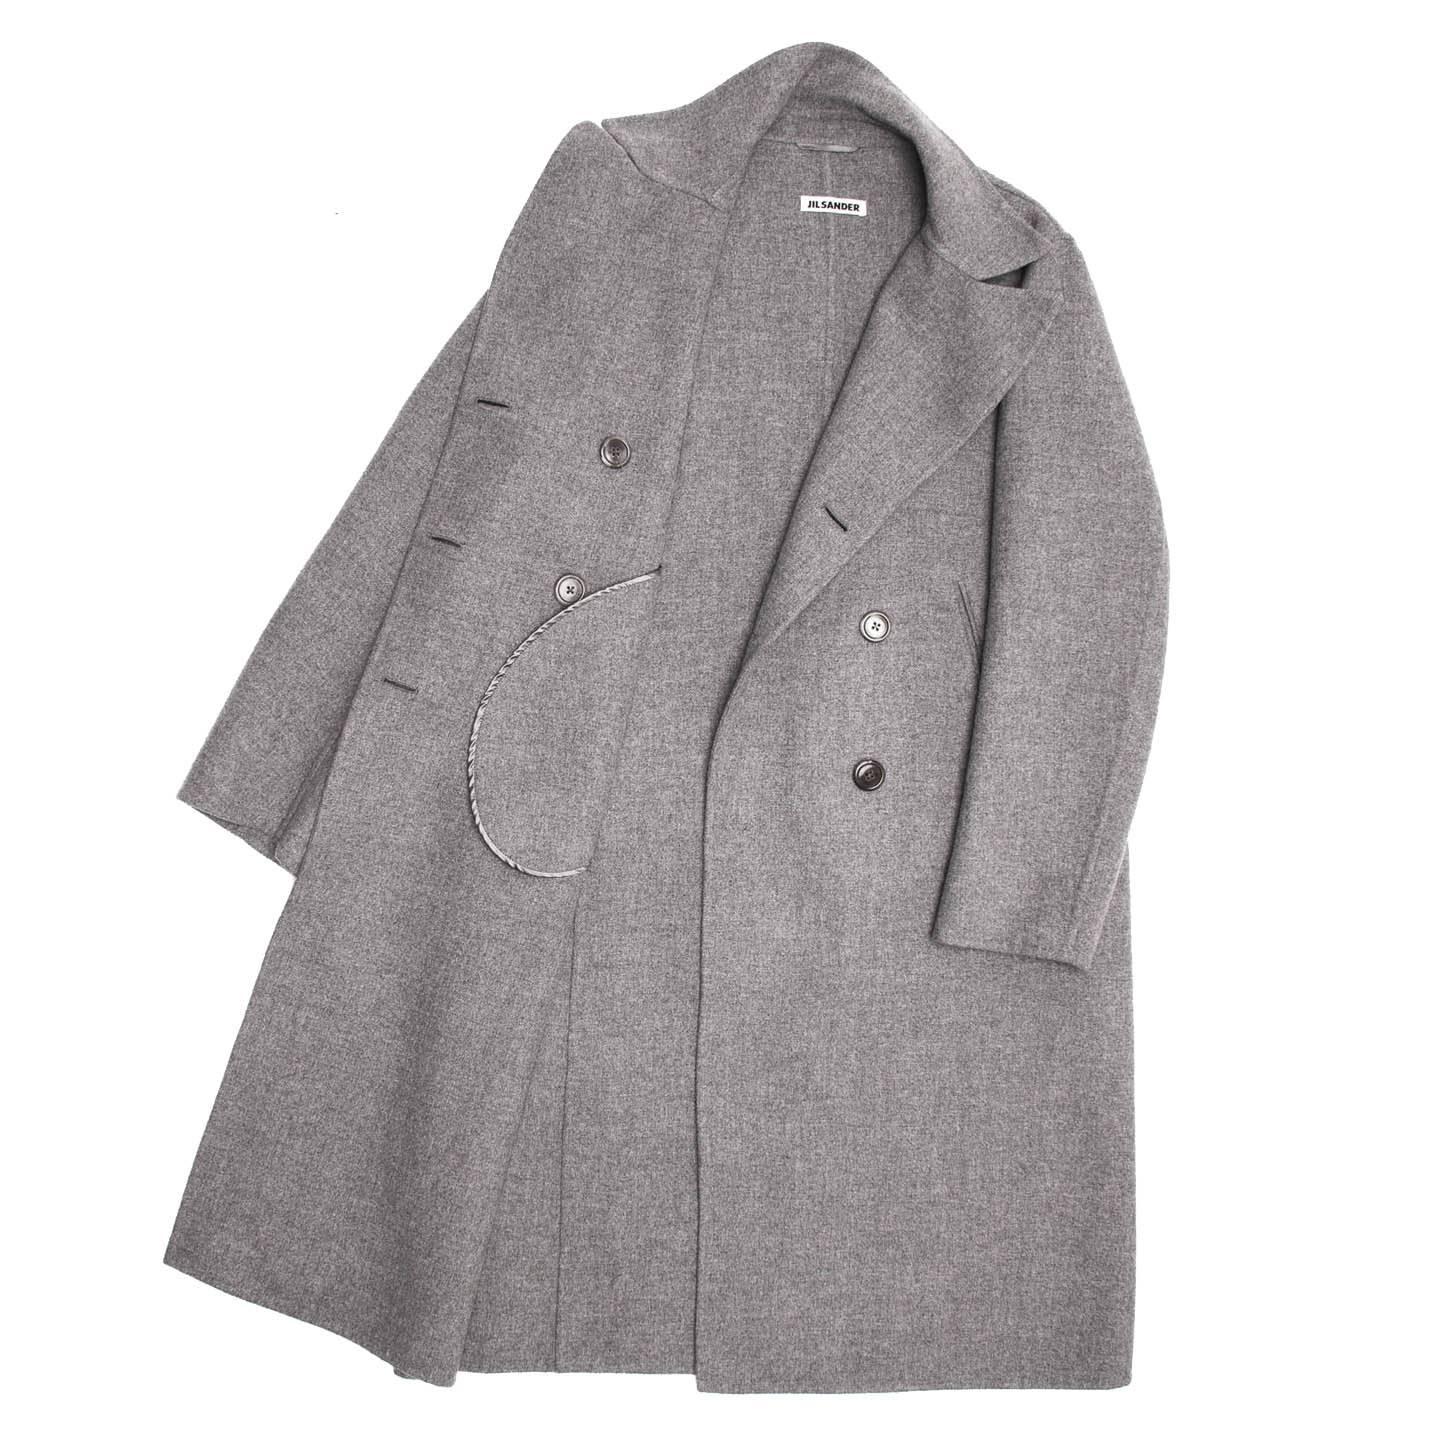 grey cashmere coat